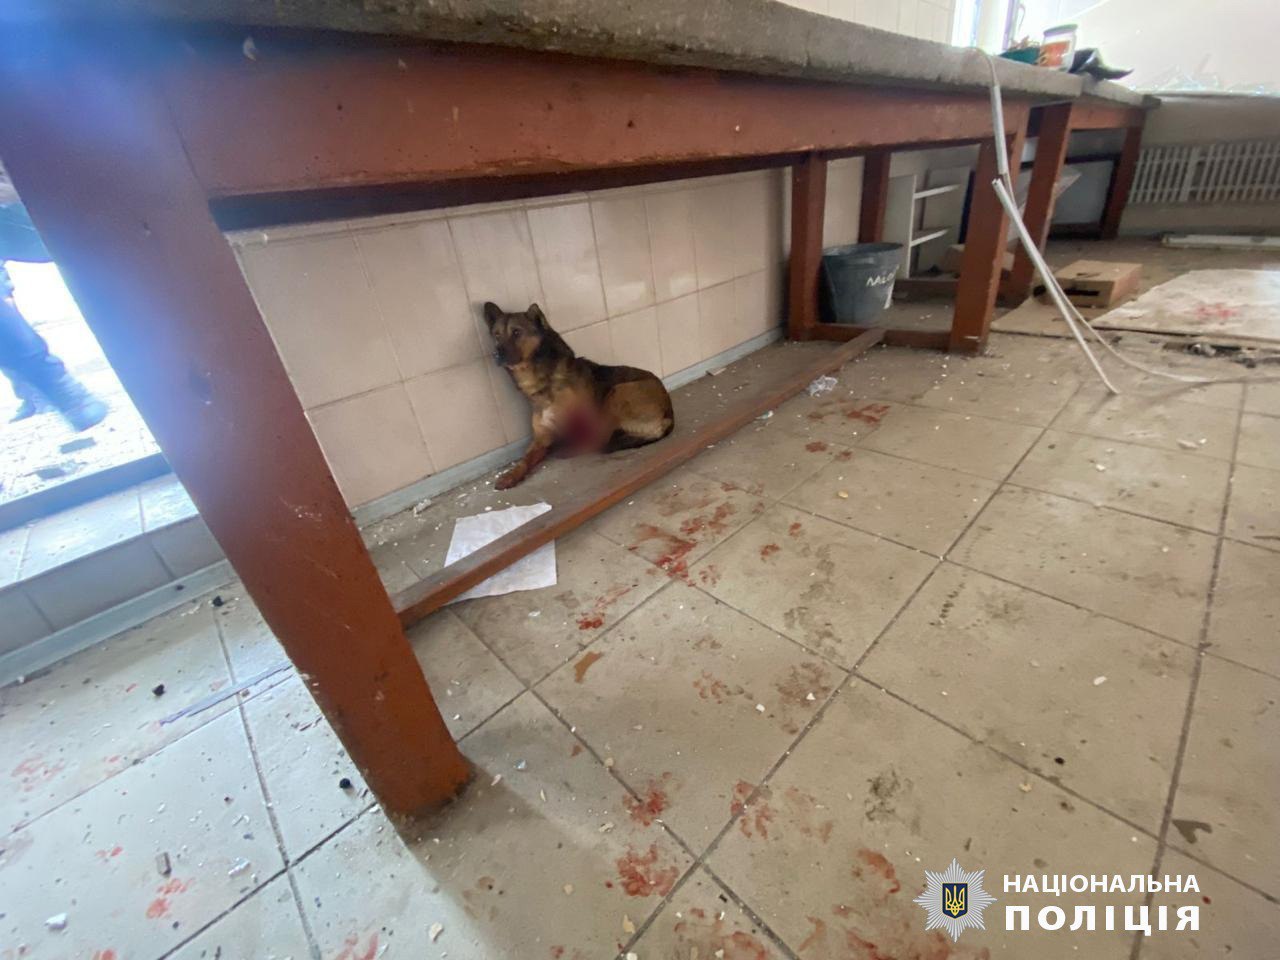 Поліцейські та волонтери Харківщини врятували пораненого під час обстрілу собаку